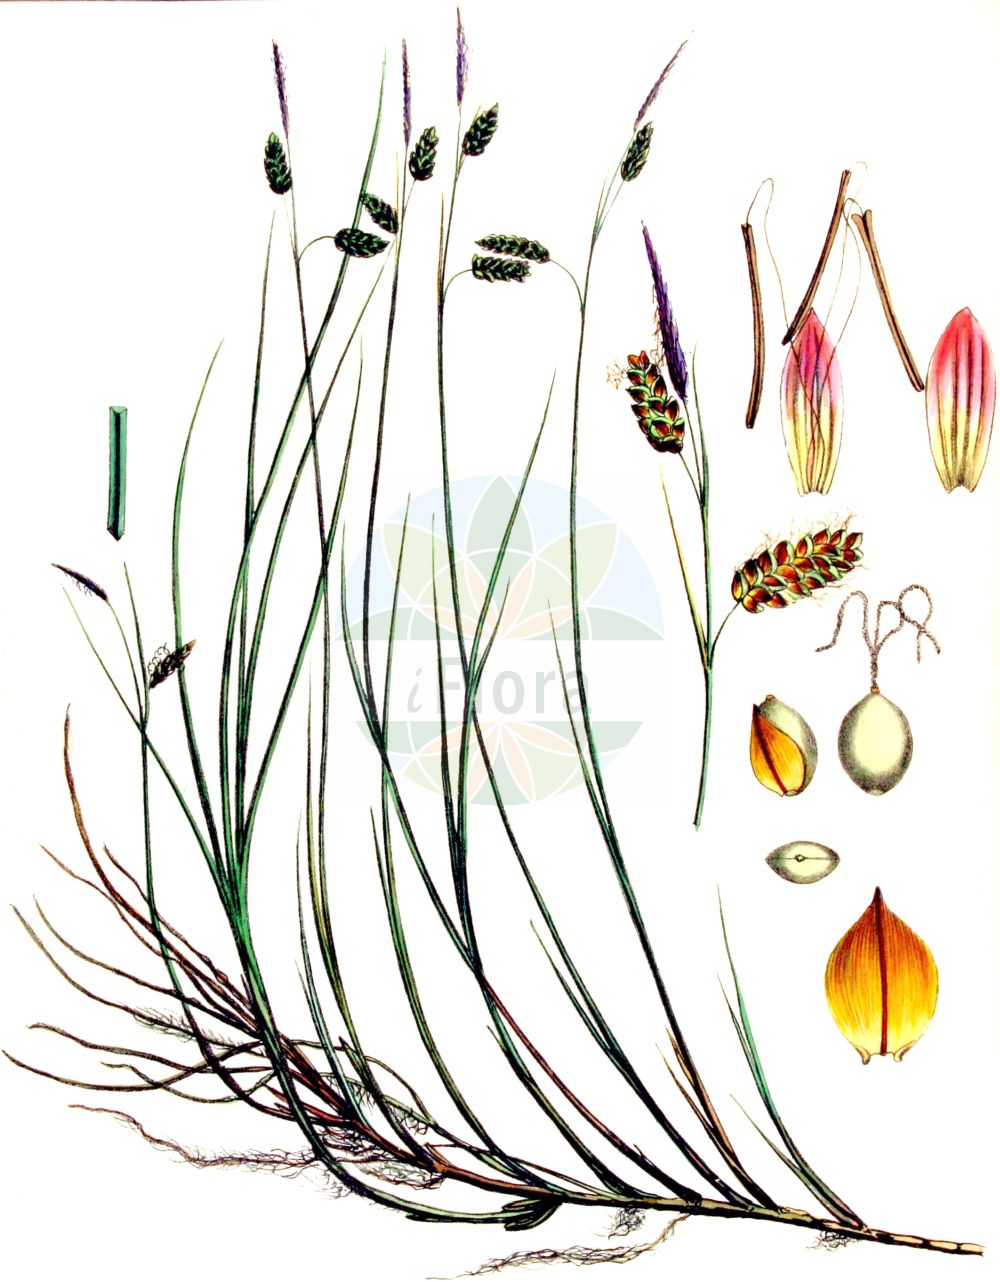 Historische Abbildung von Carex limosa (Schlamm-Segge - Bog-Sedge). Das Bild zeigt Blatt, Bluete, Frucht und Same. ---- Historical Drawing of Carex limosa (Schlamm-Segge - Bog-Sedge). The image is showing leaf, flower, fruit and seed.(Carex limosa,Schlamm-Segge,Bog-Sedge,Carex limosa,Schlamm-Segge,Bog-Sedge,Mud Sedge,Carex,Segge,Sedge,Cyperaceae,Sauergräser,Sedge family,Blatt,Bluete,Frucht,Same,leaf,flower,fruit,seed,Kops (1800-1934))